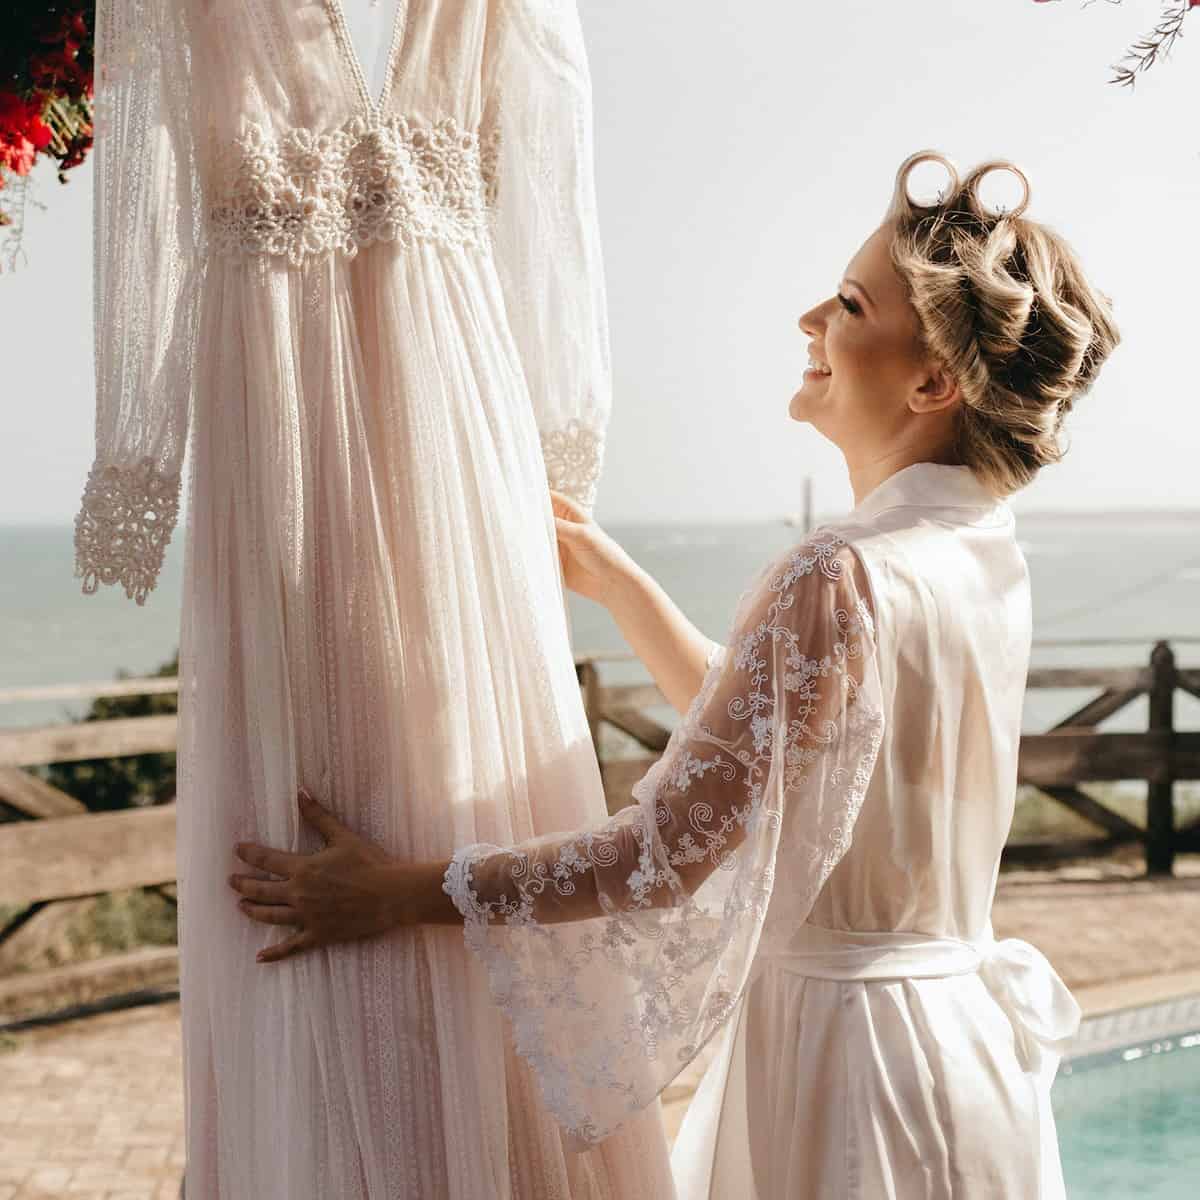 Noiva olhando para seu vestido de casamento enquanto está se arrumando